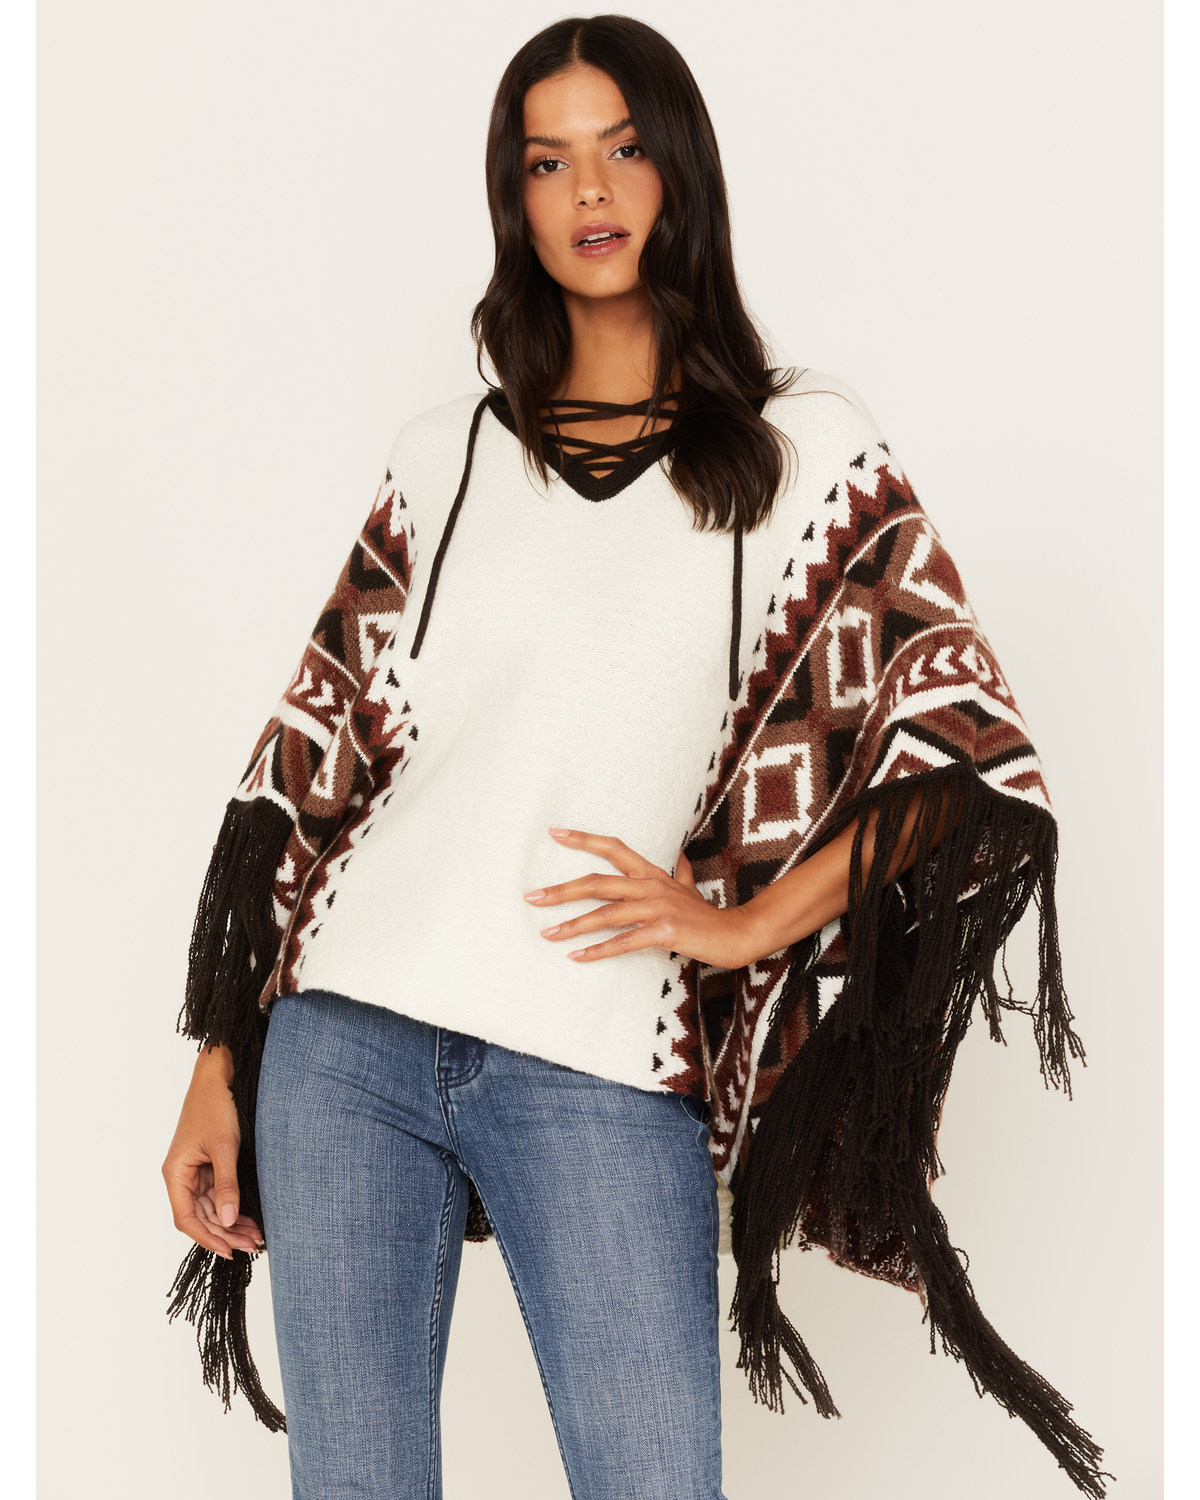 Idyllwind Women's Southwestern Knit Poncho Sweater